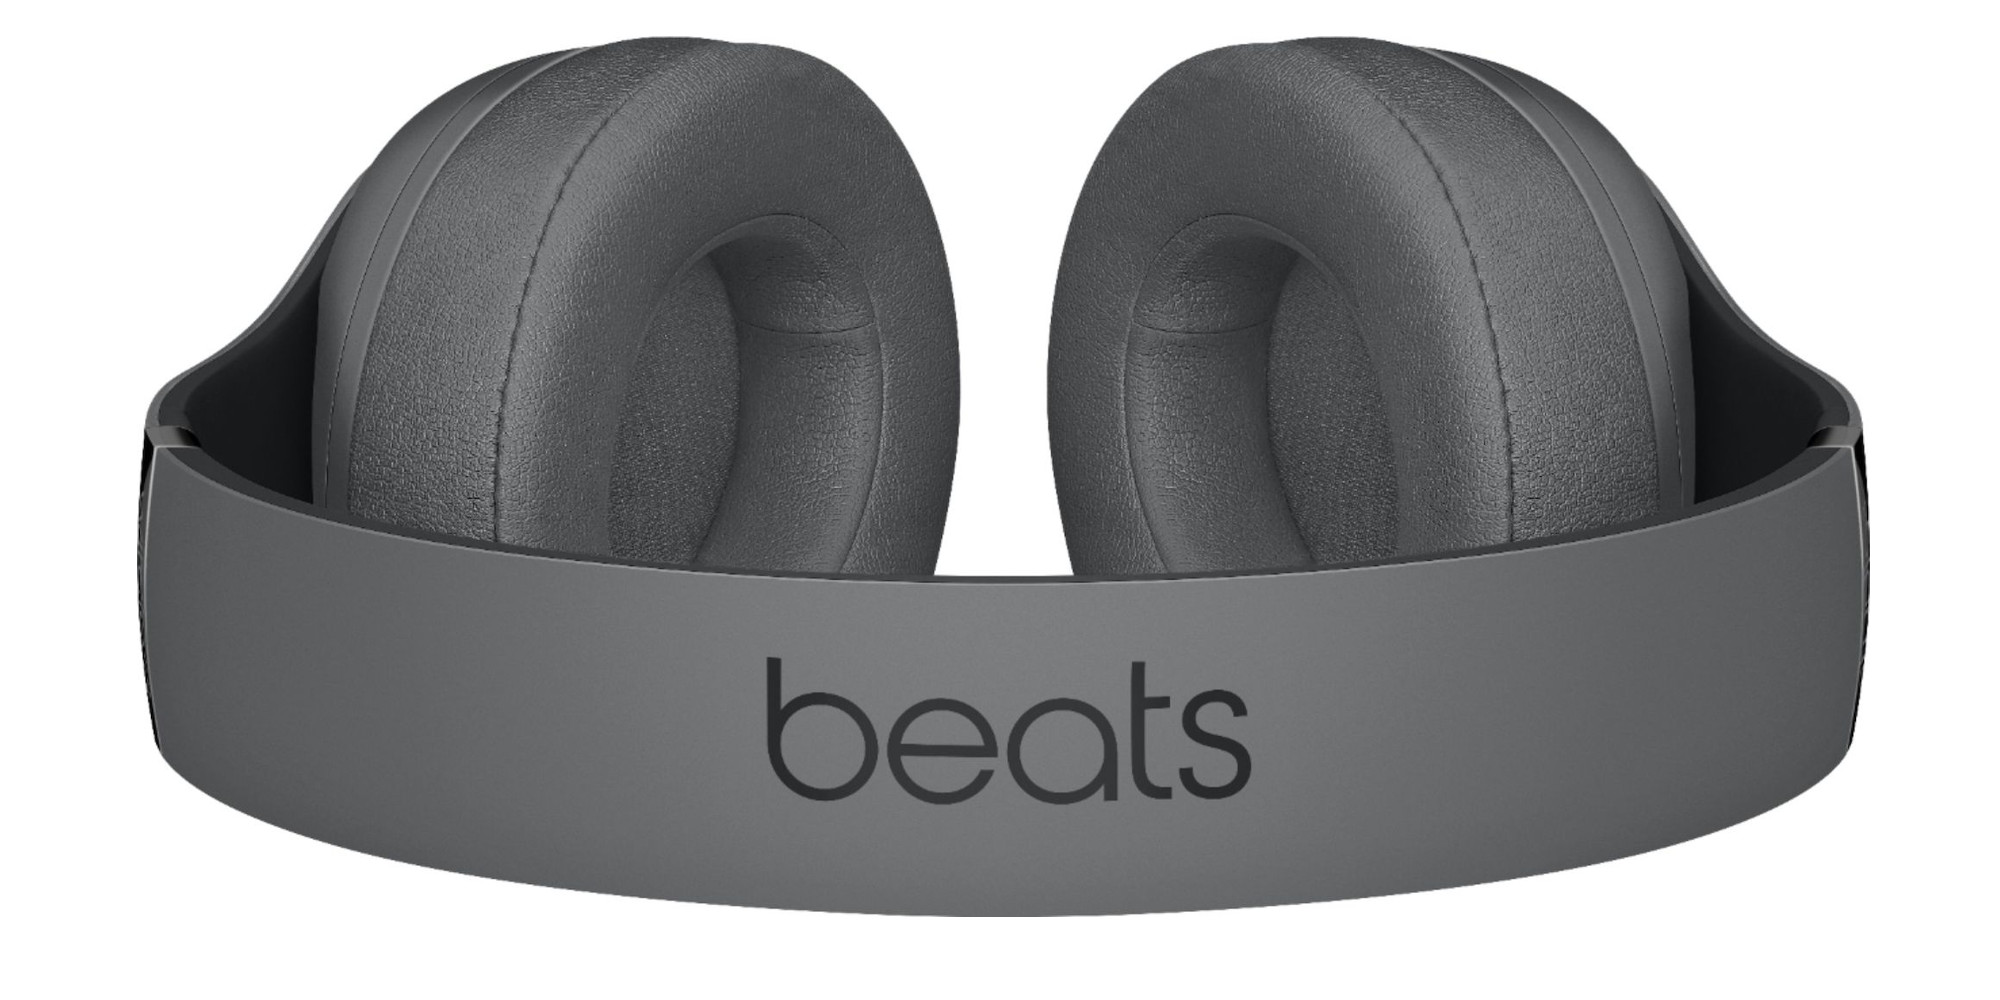 $100 beats headphones